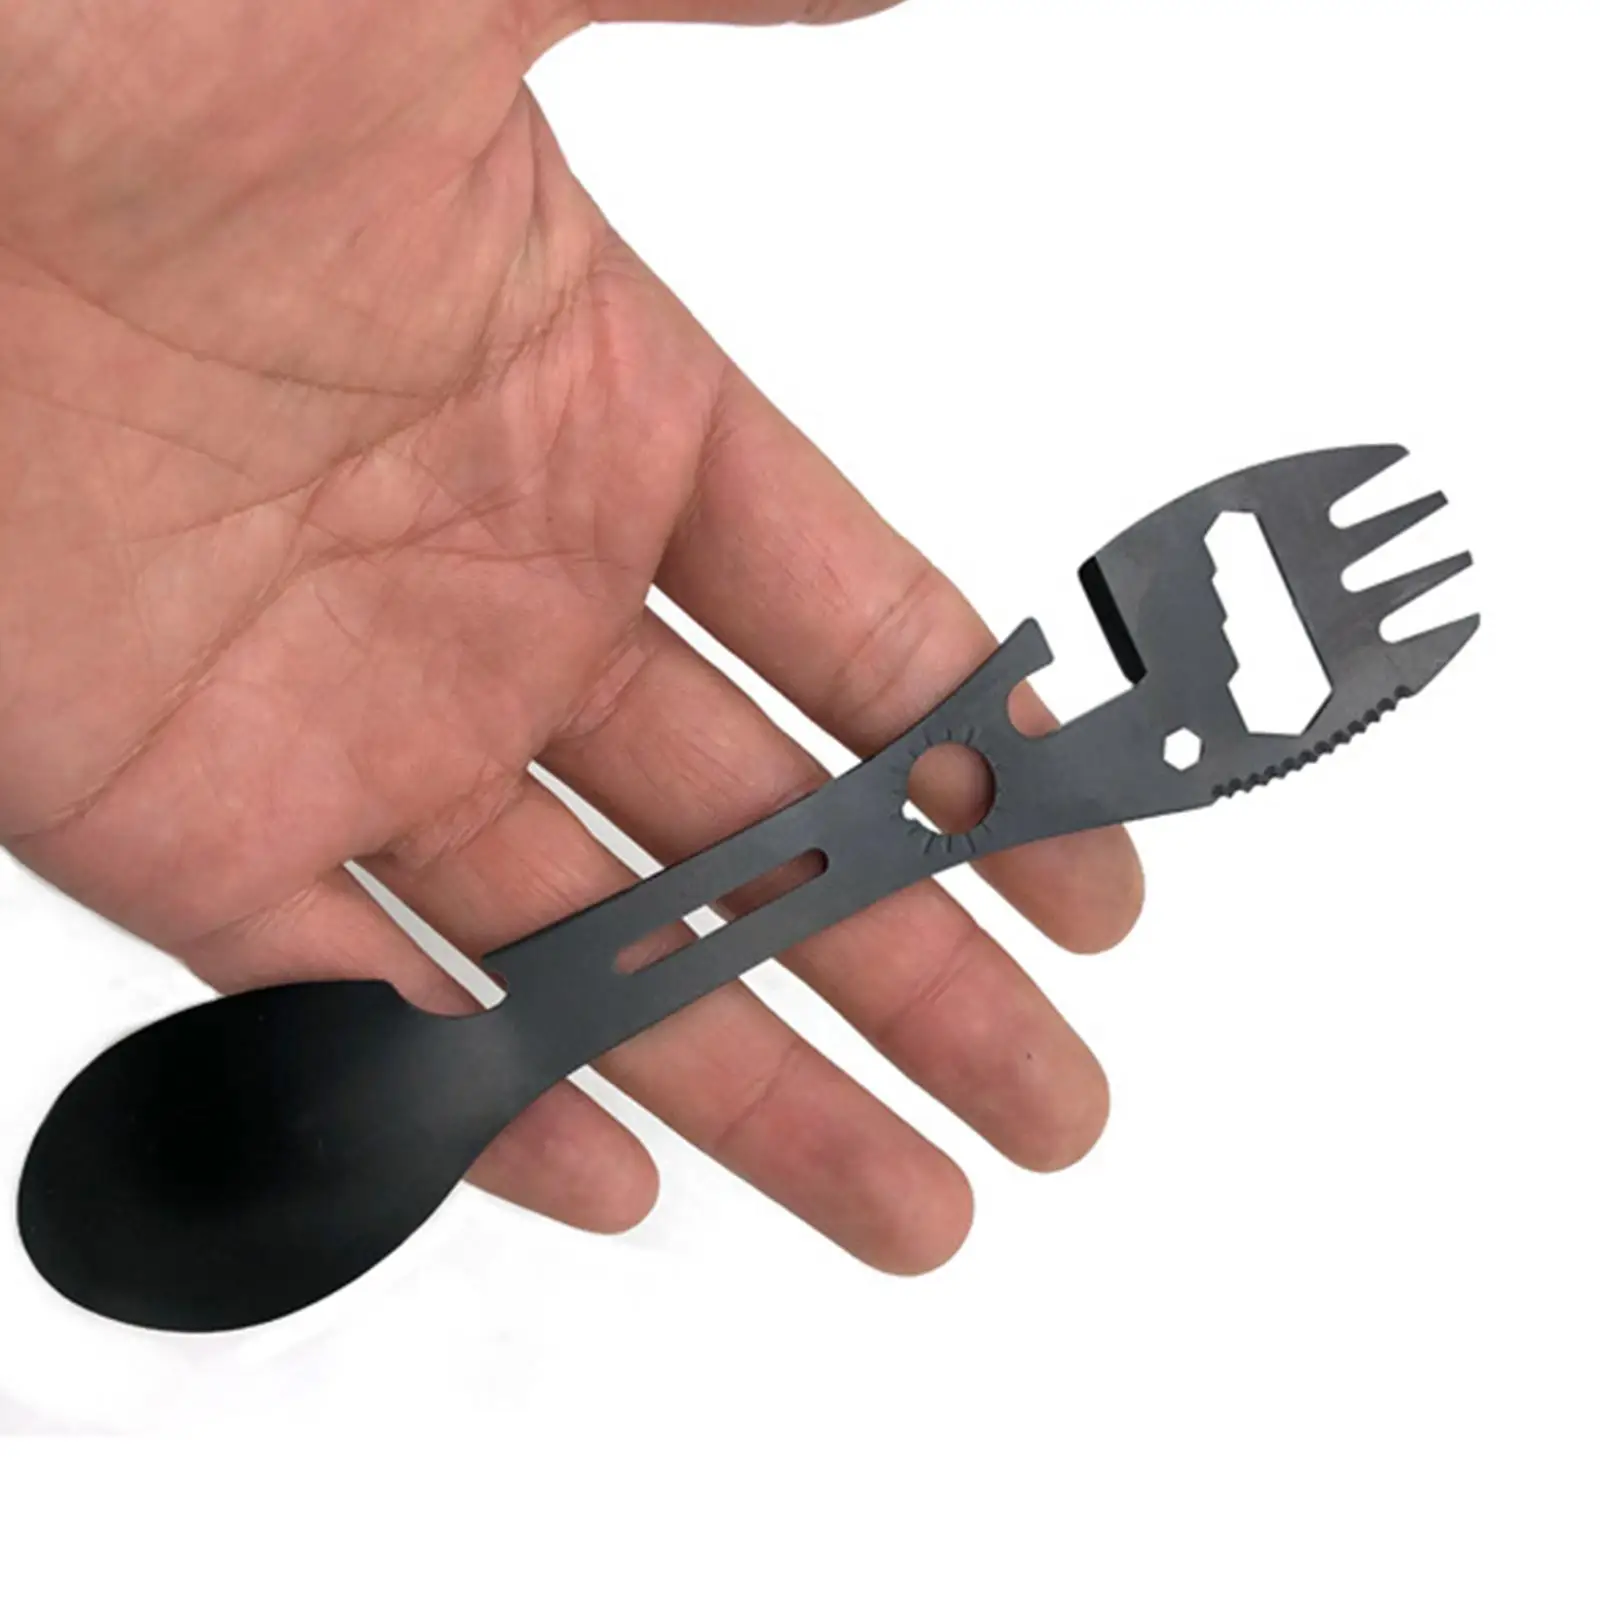 Portable Spork Spoon Can Opener Dinnerware Stainless Steel Functional Tableware